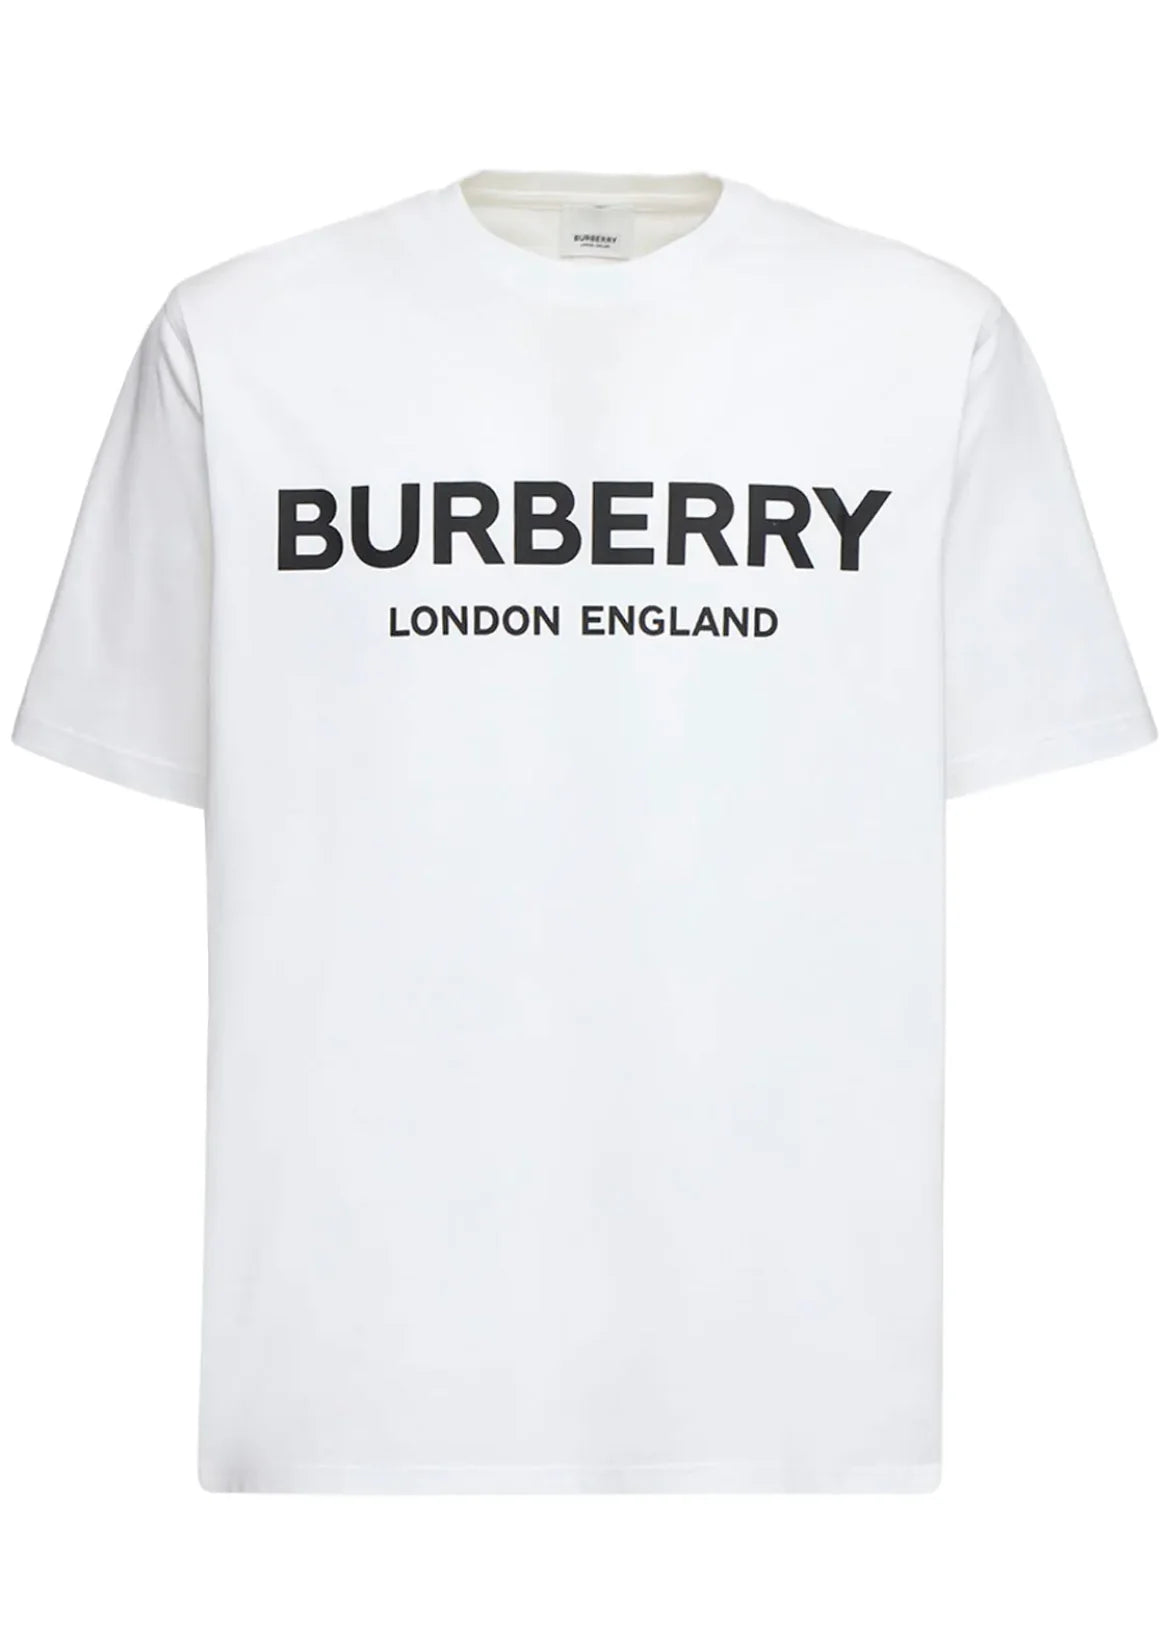 Burberry London England Tshirt White